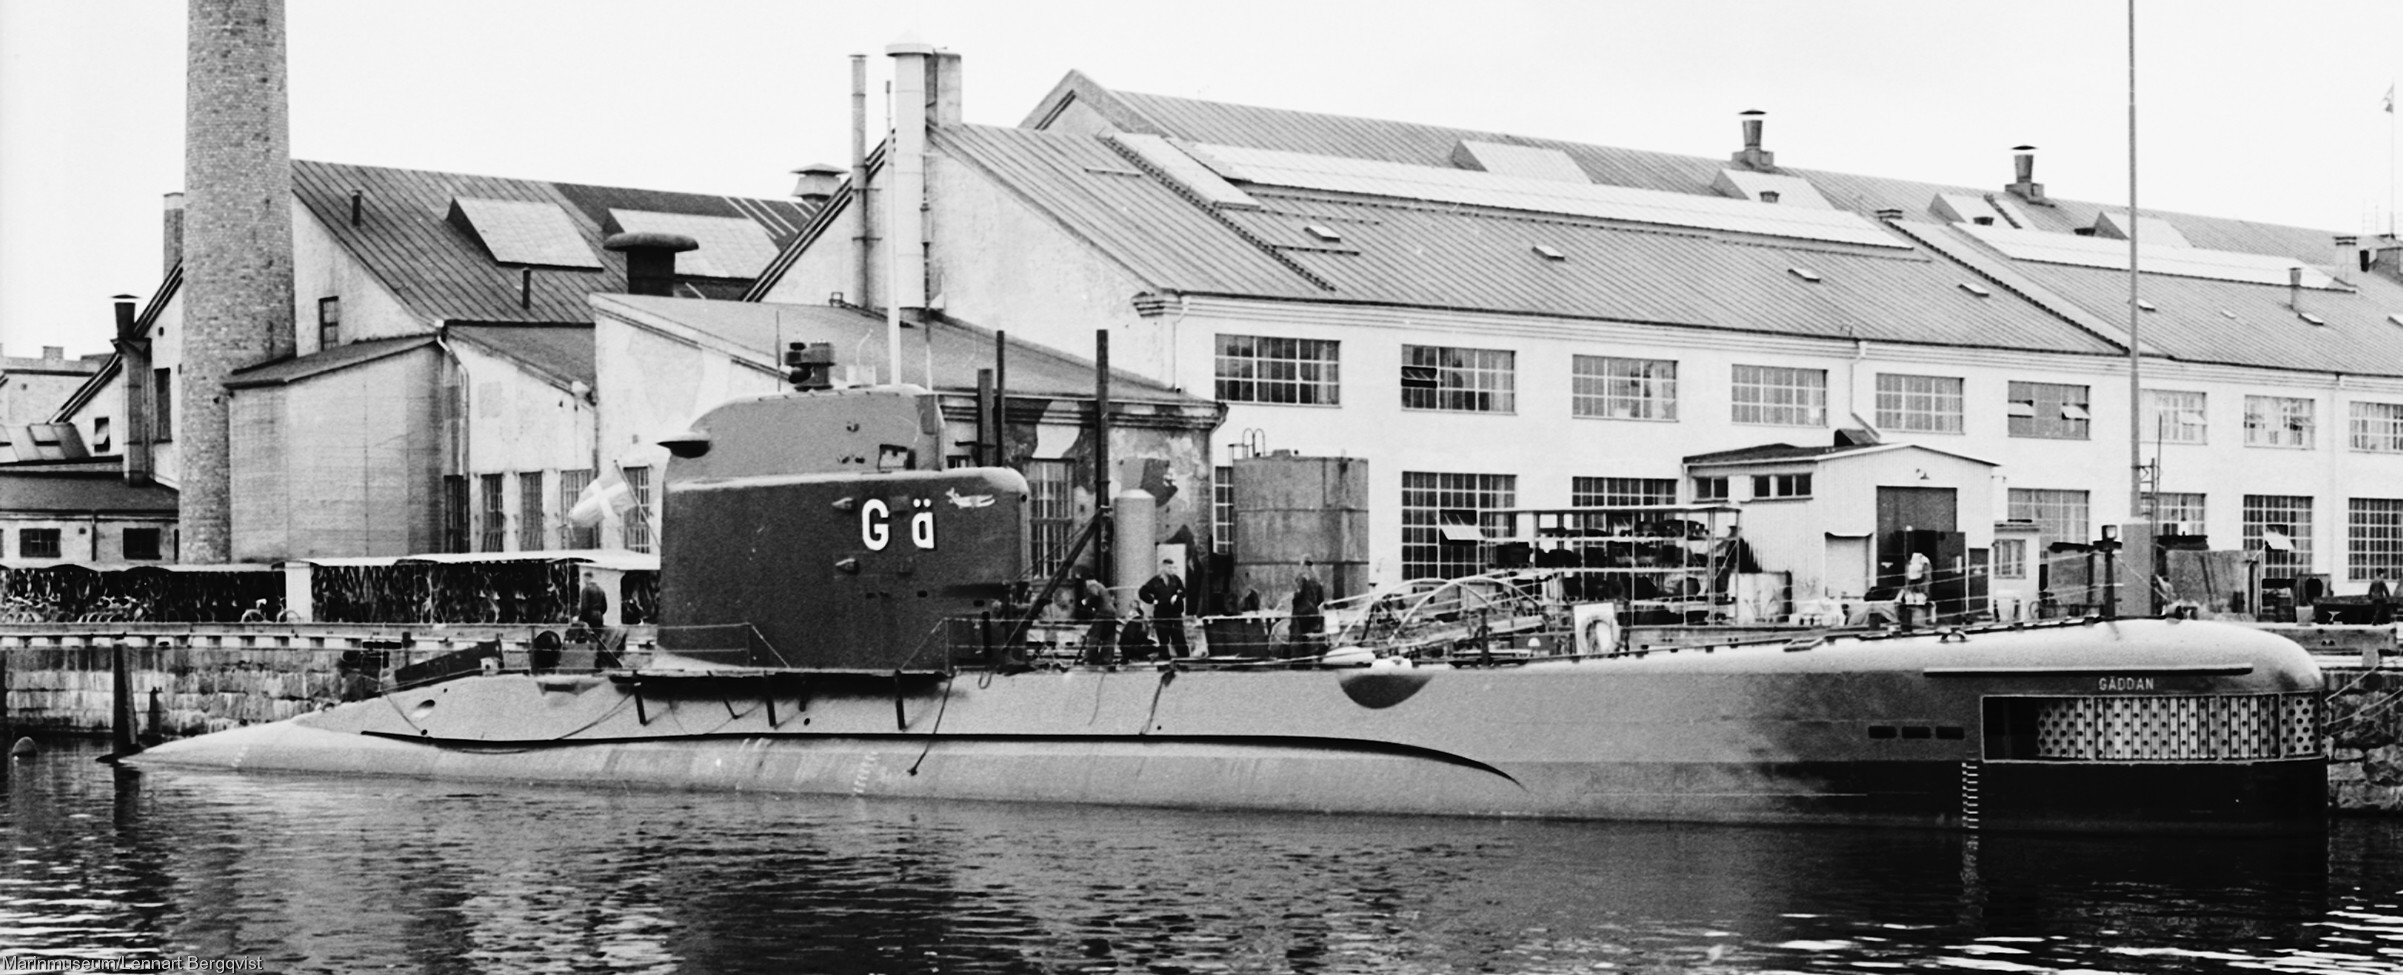 hms hswms gäddan aborren a13 class attack submarine ubåt swedish navy svenska marinen försvarsmakten 02a